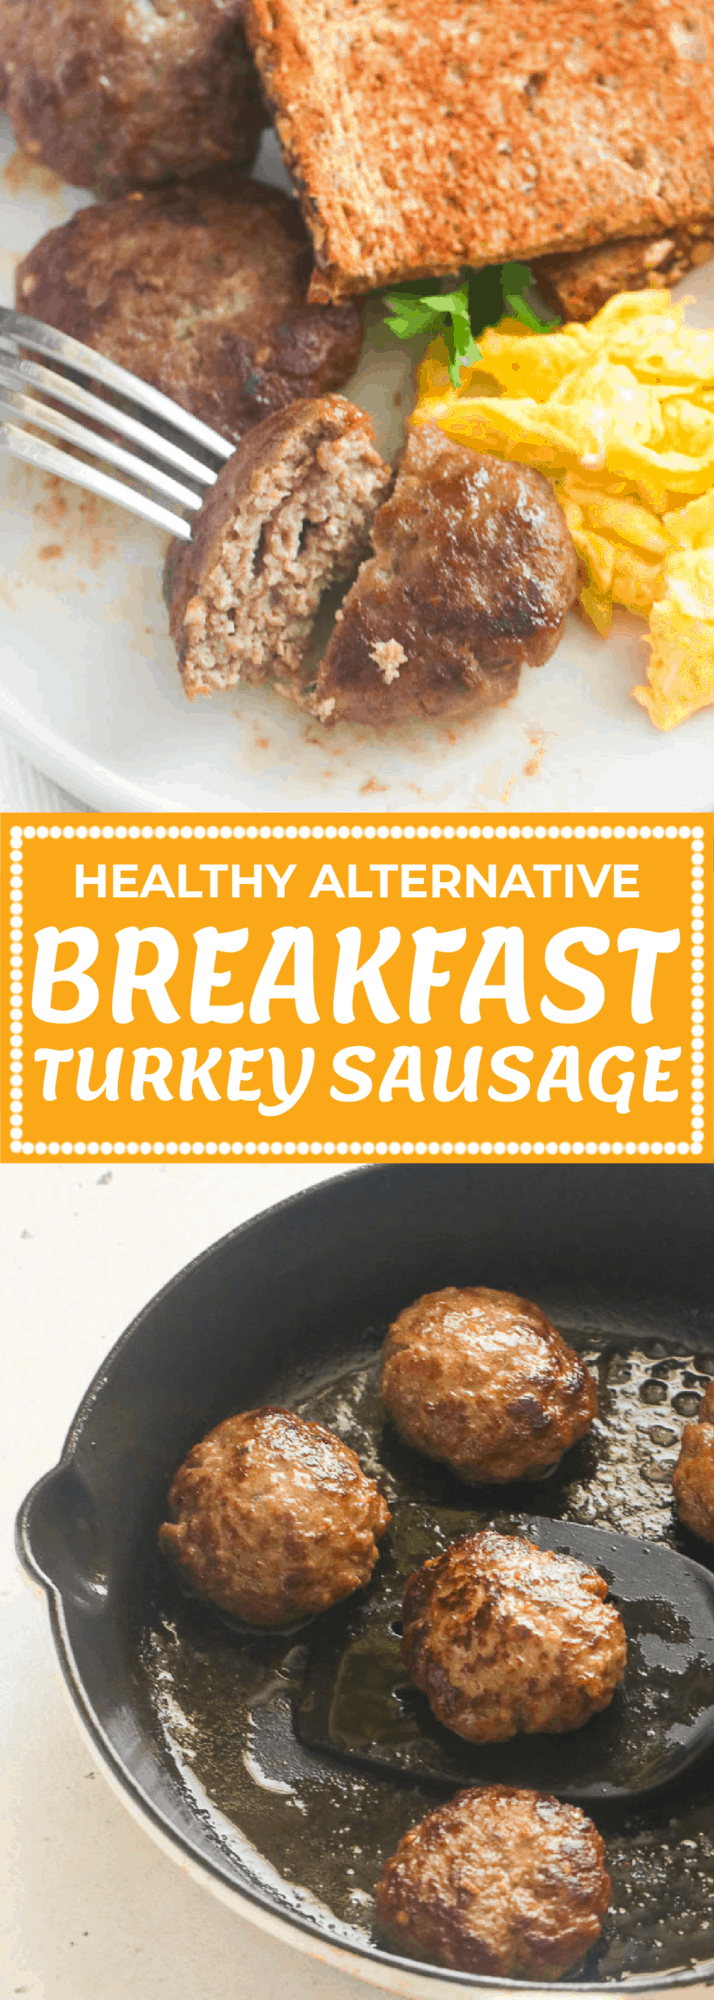 Breakfast Turkey Sausage